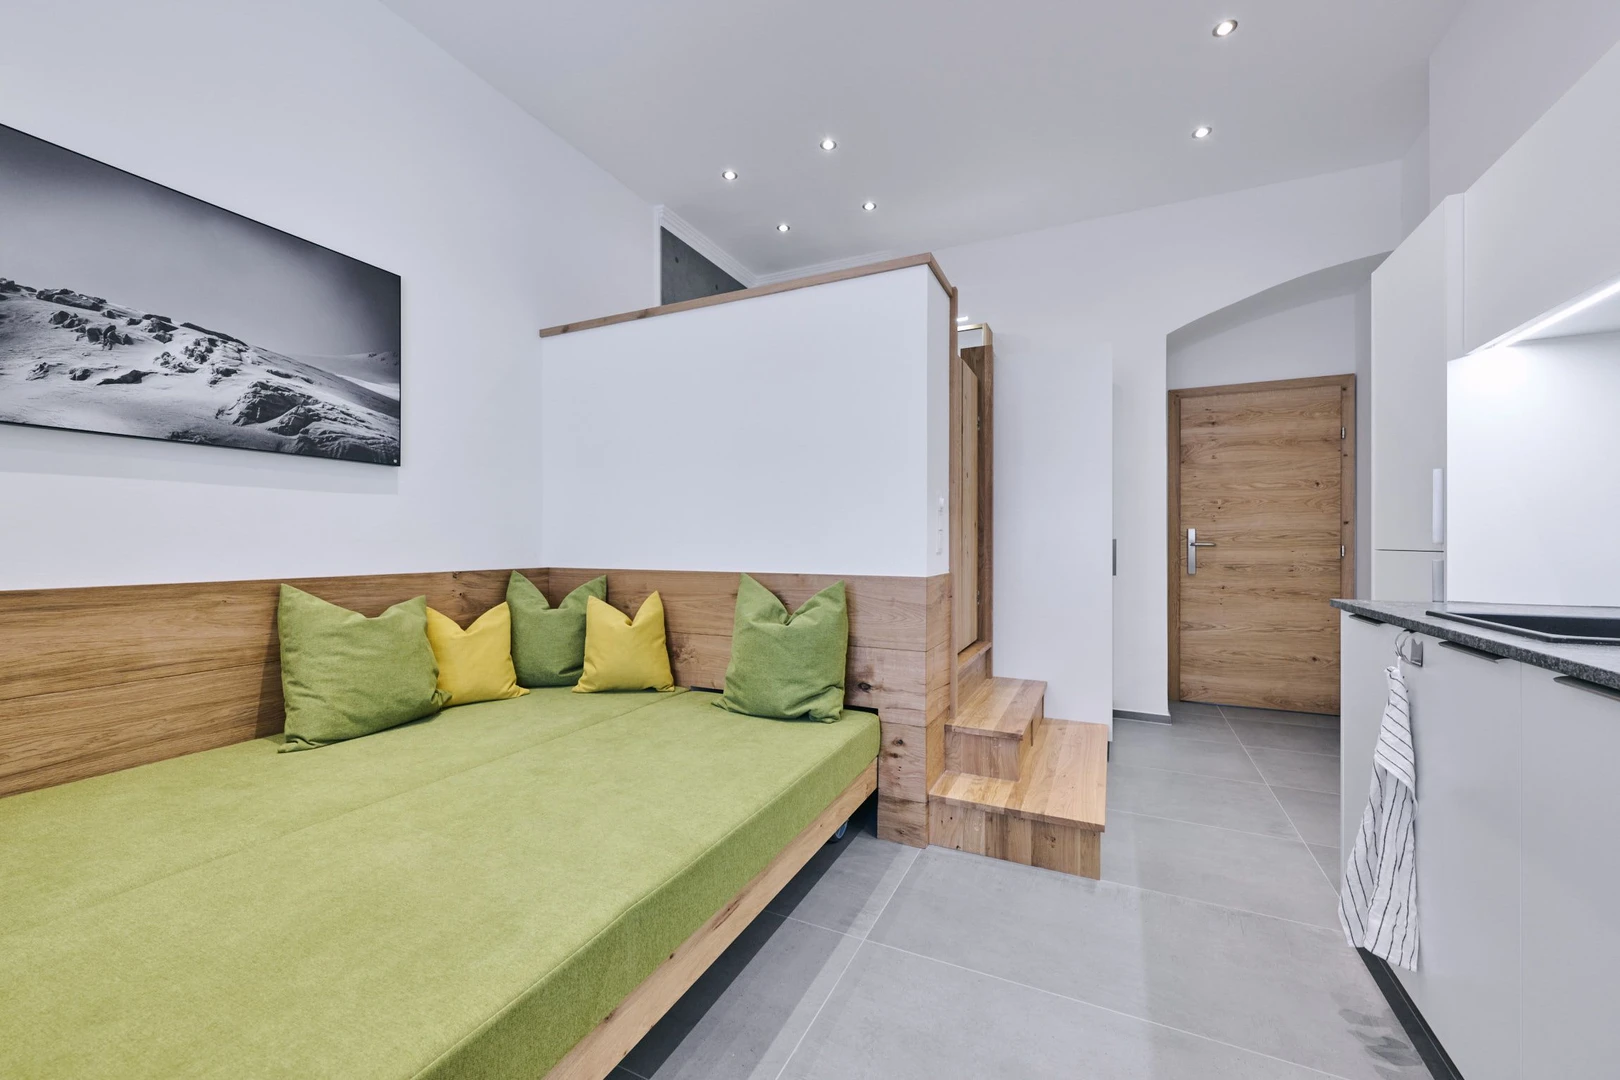 Alquiler de habitación en piso compartido en Innsbruck